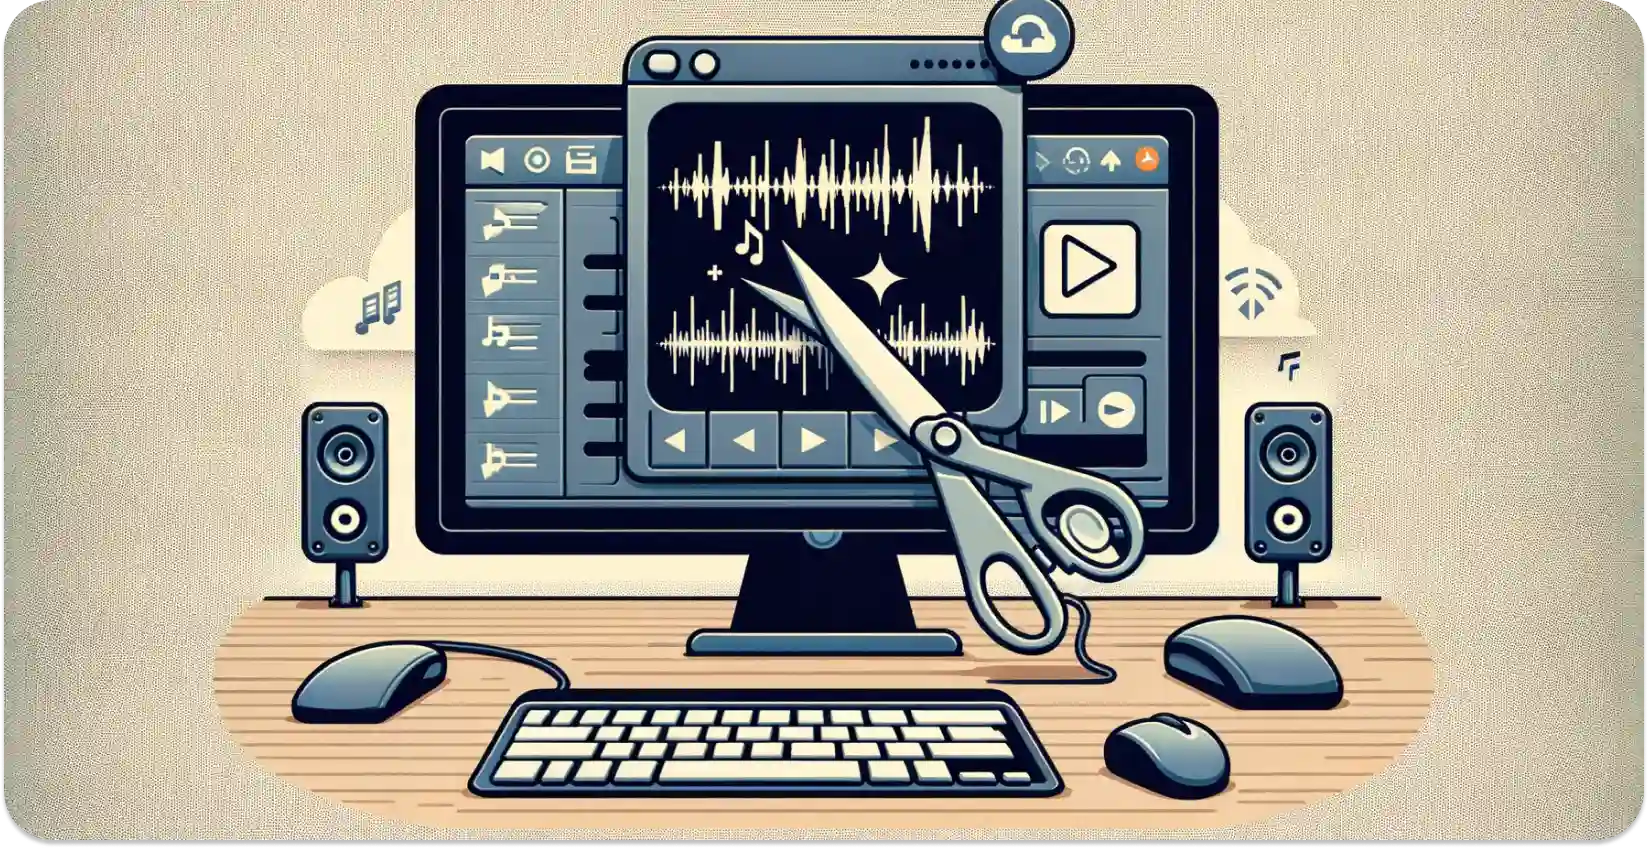 Interfaccia software di trimming audio desktop con modifica della forma d'onda e controlli multimediali.